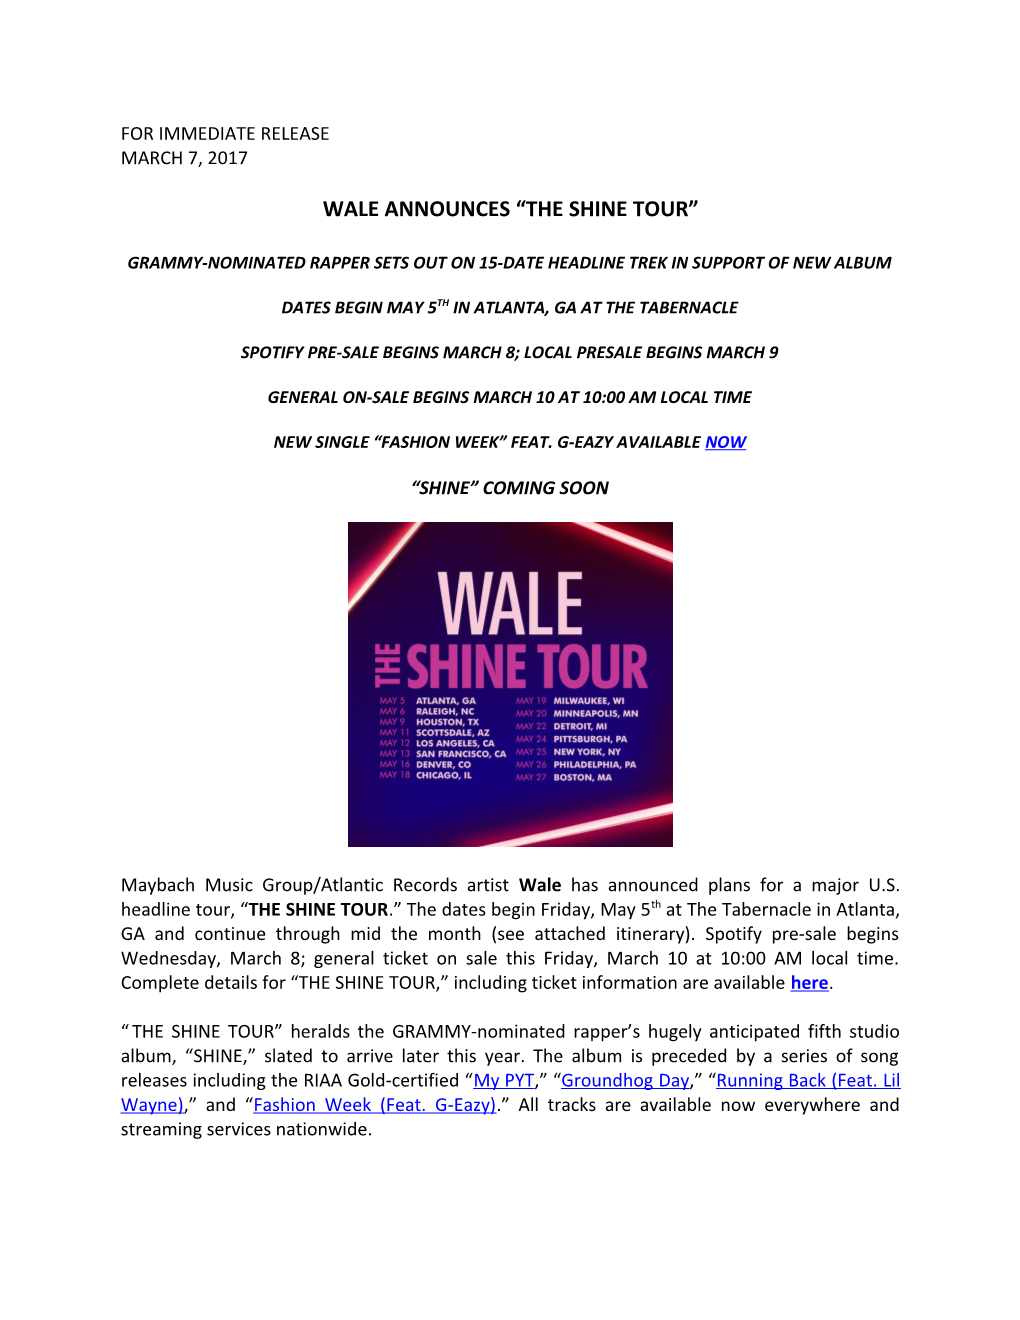 Wale Announces the Shine Tour